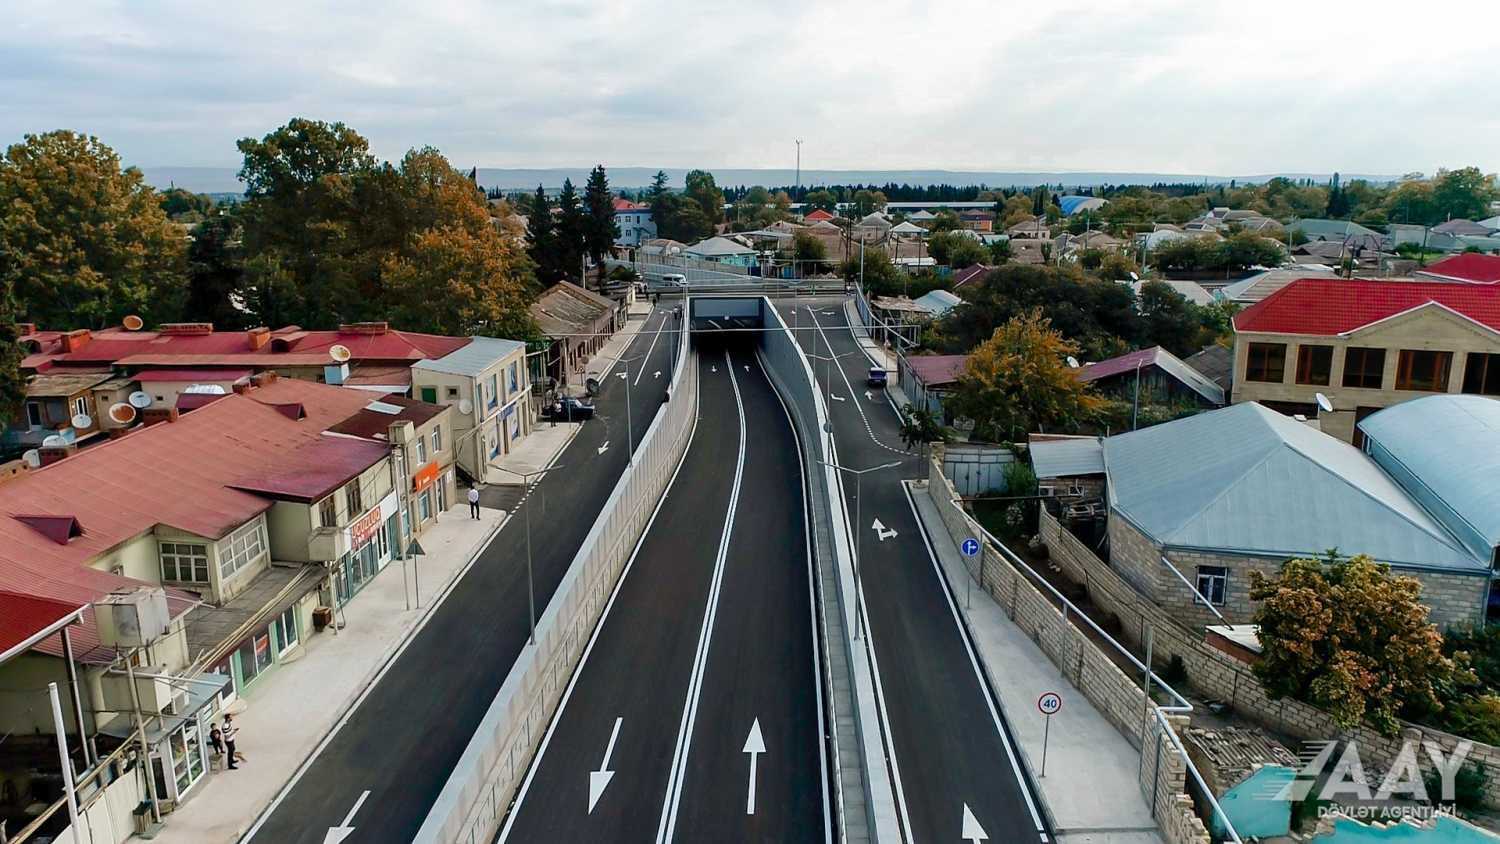 Tovuz şəhərində yeni avtomobil tuneli inşa edilib (FOTO/VİDEO)